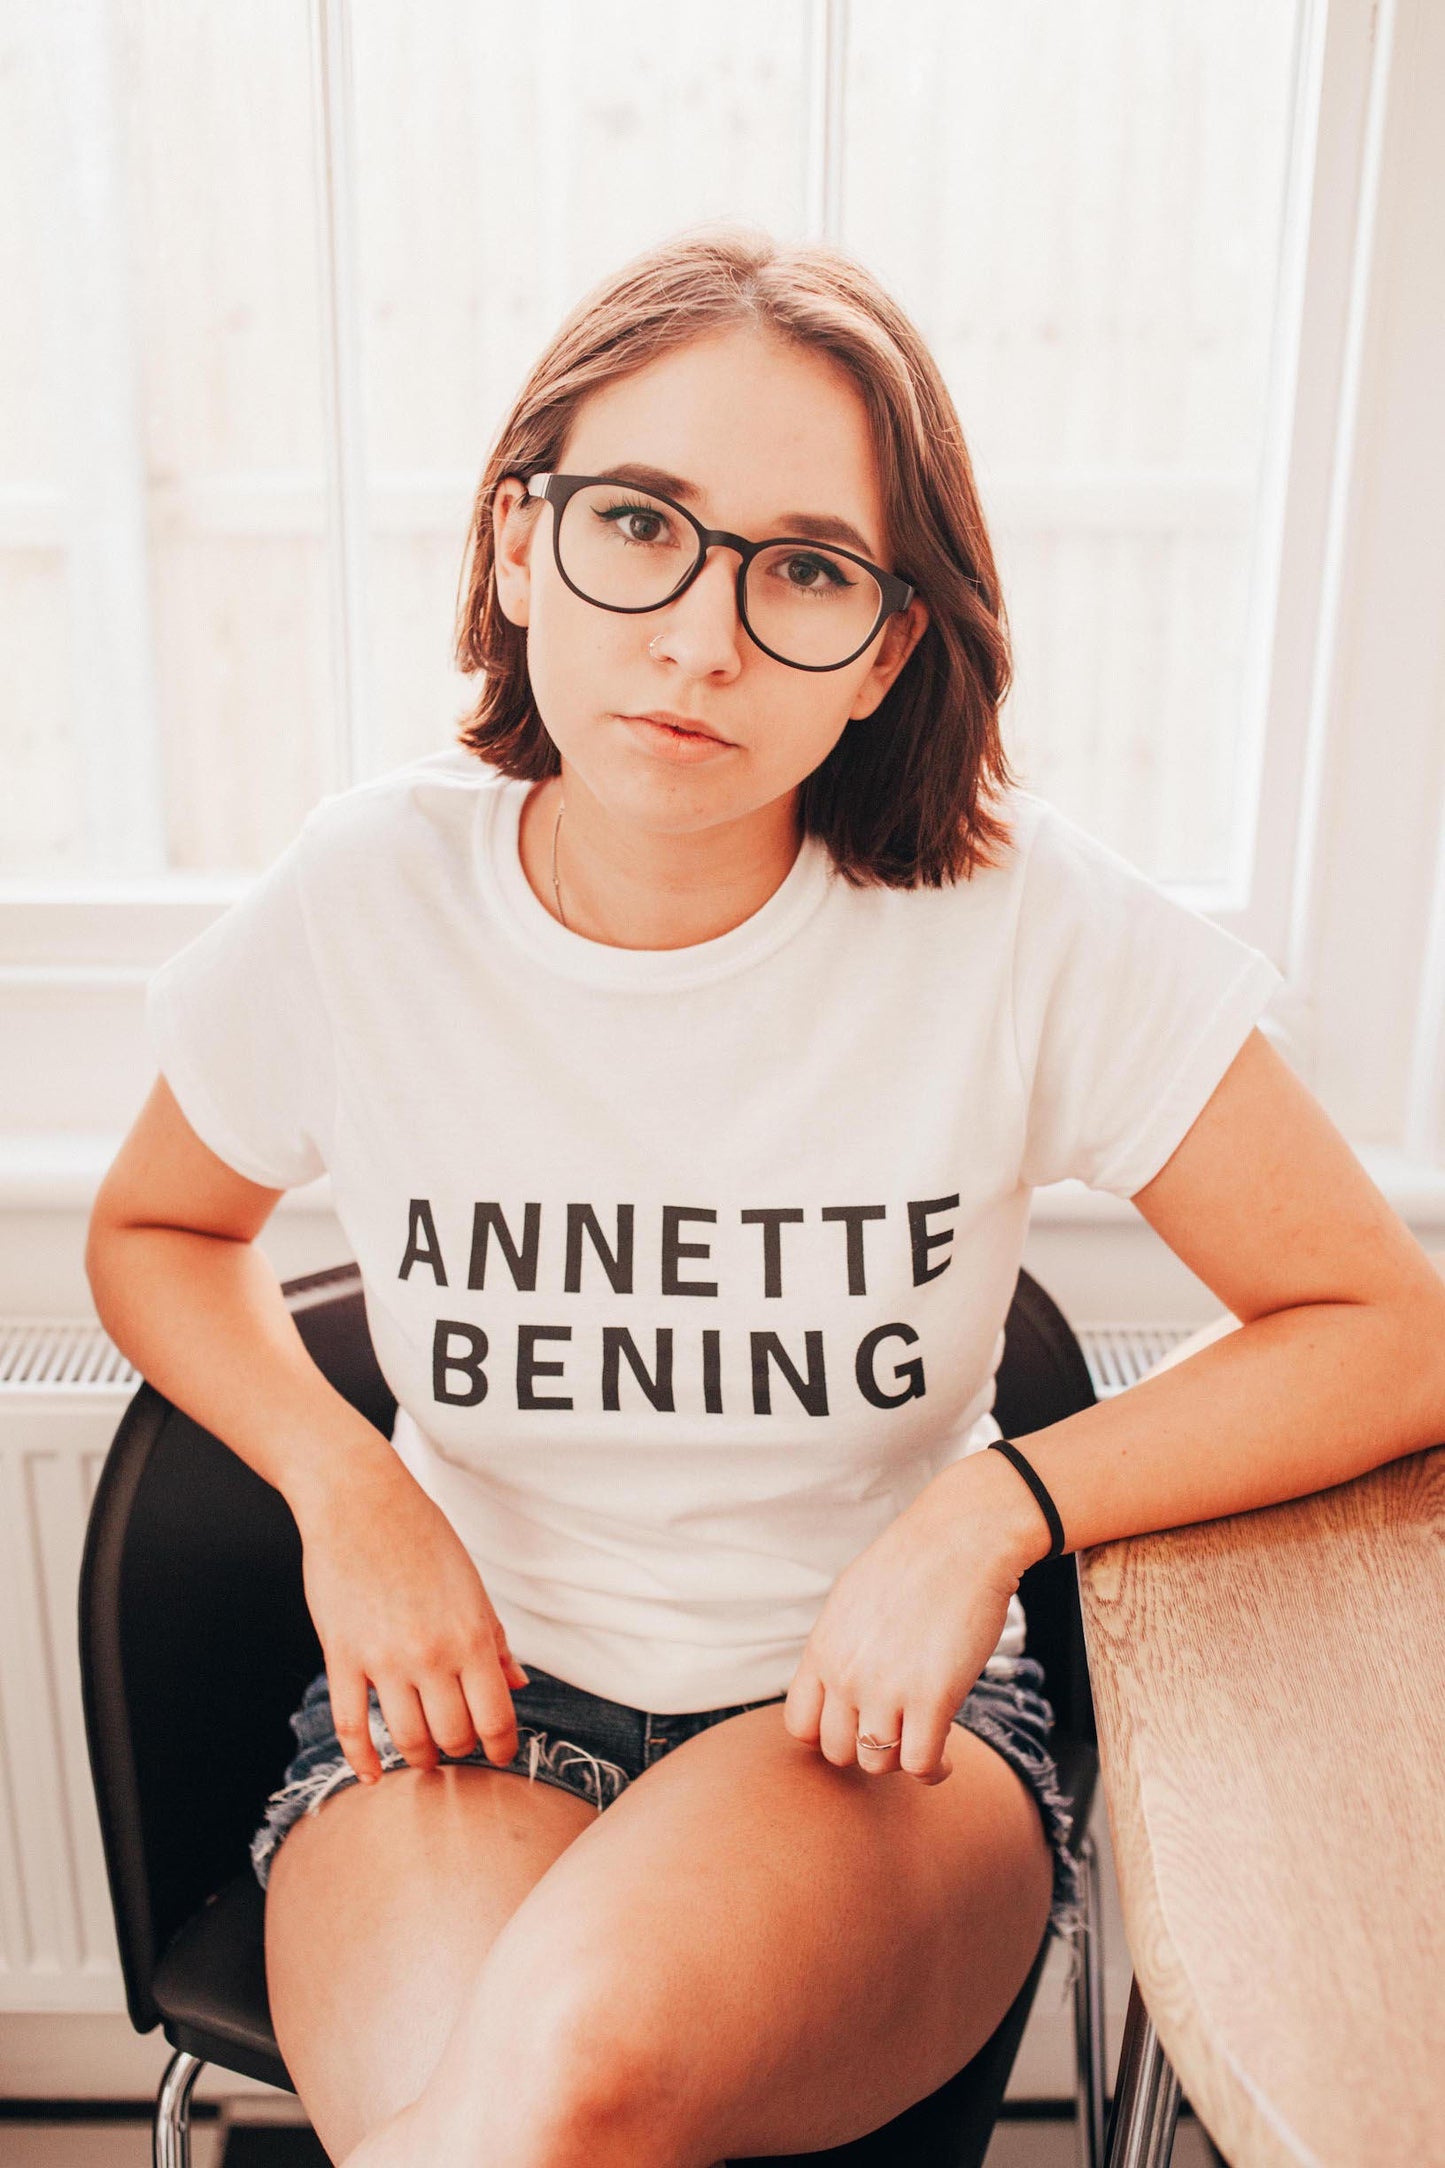 ANNETTE BENING